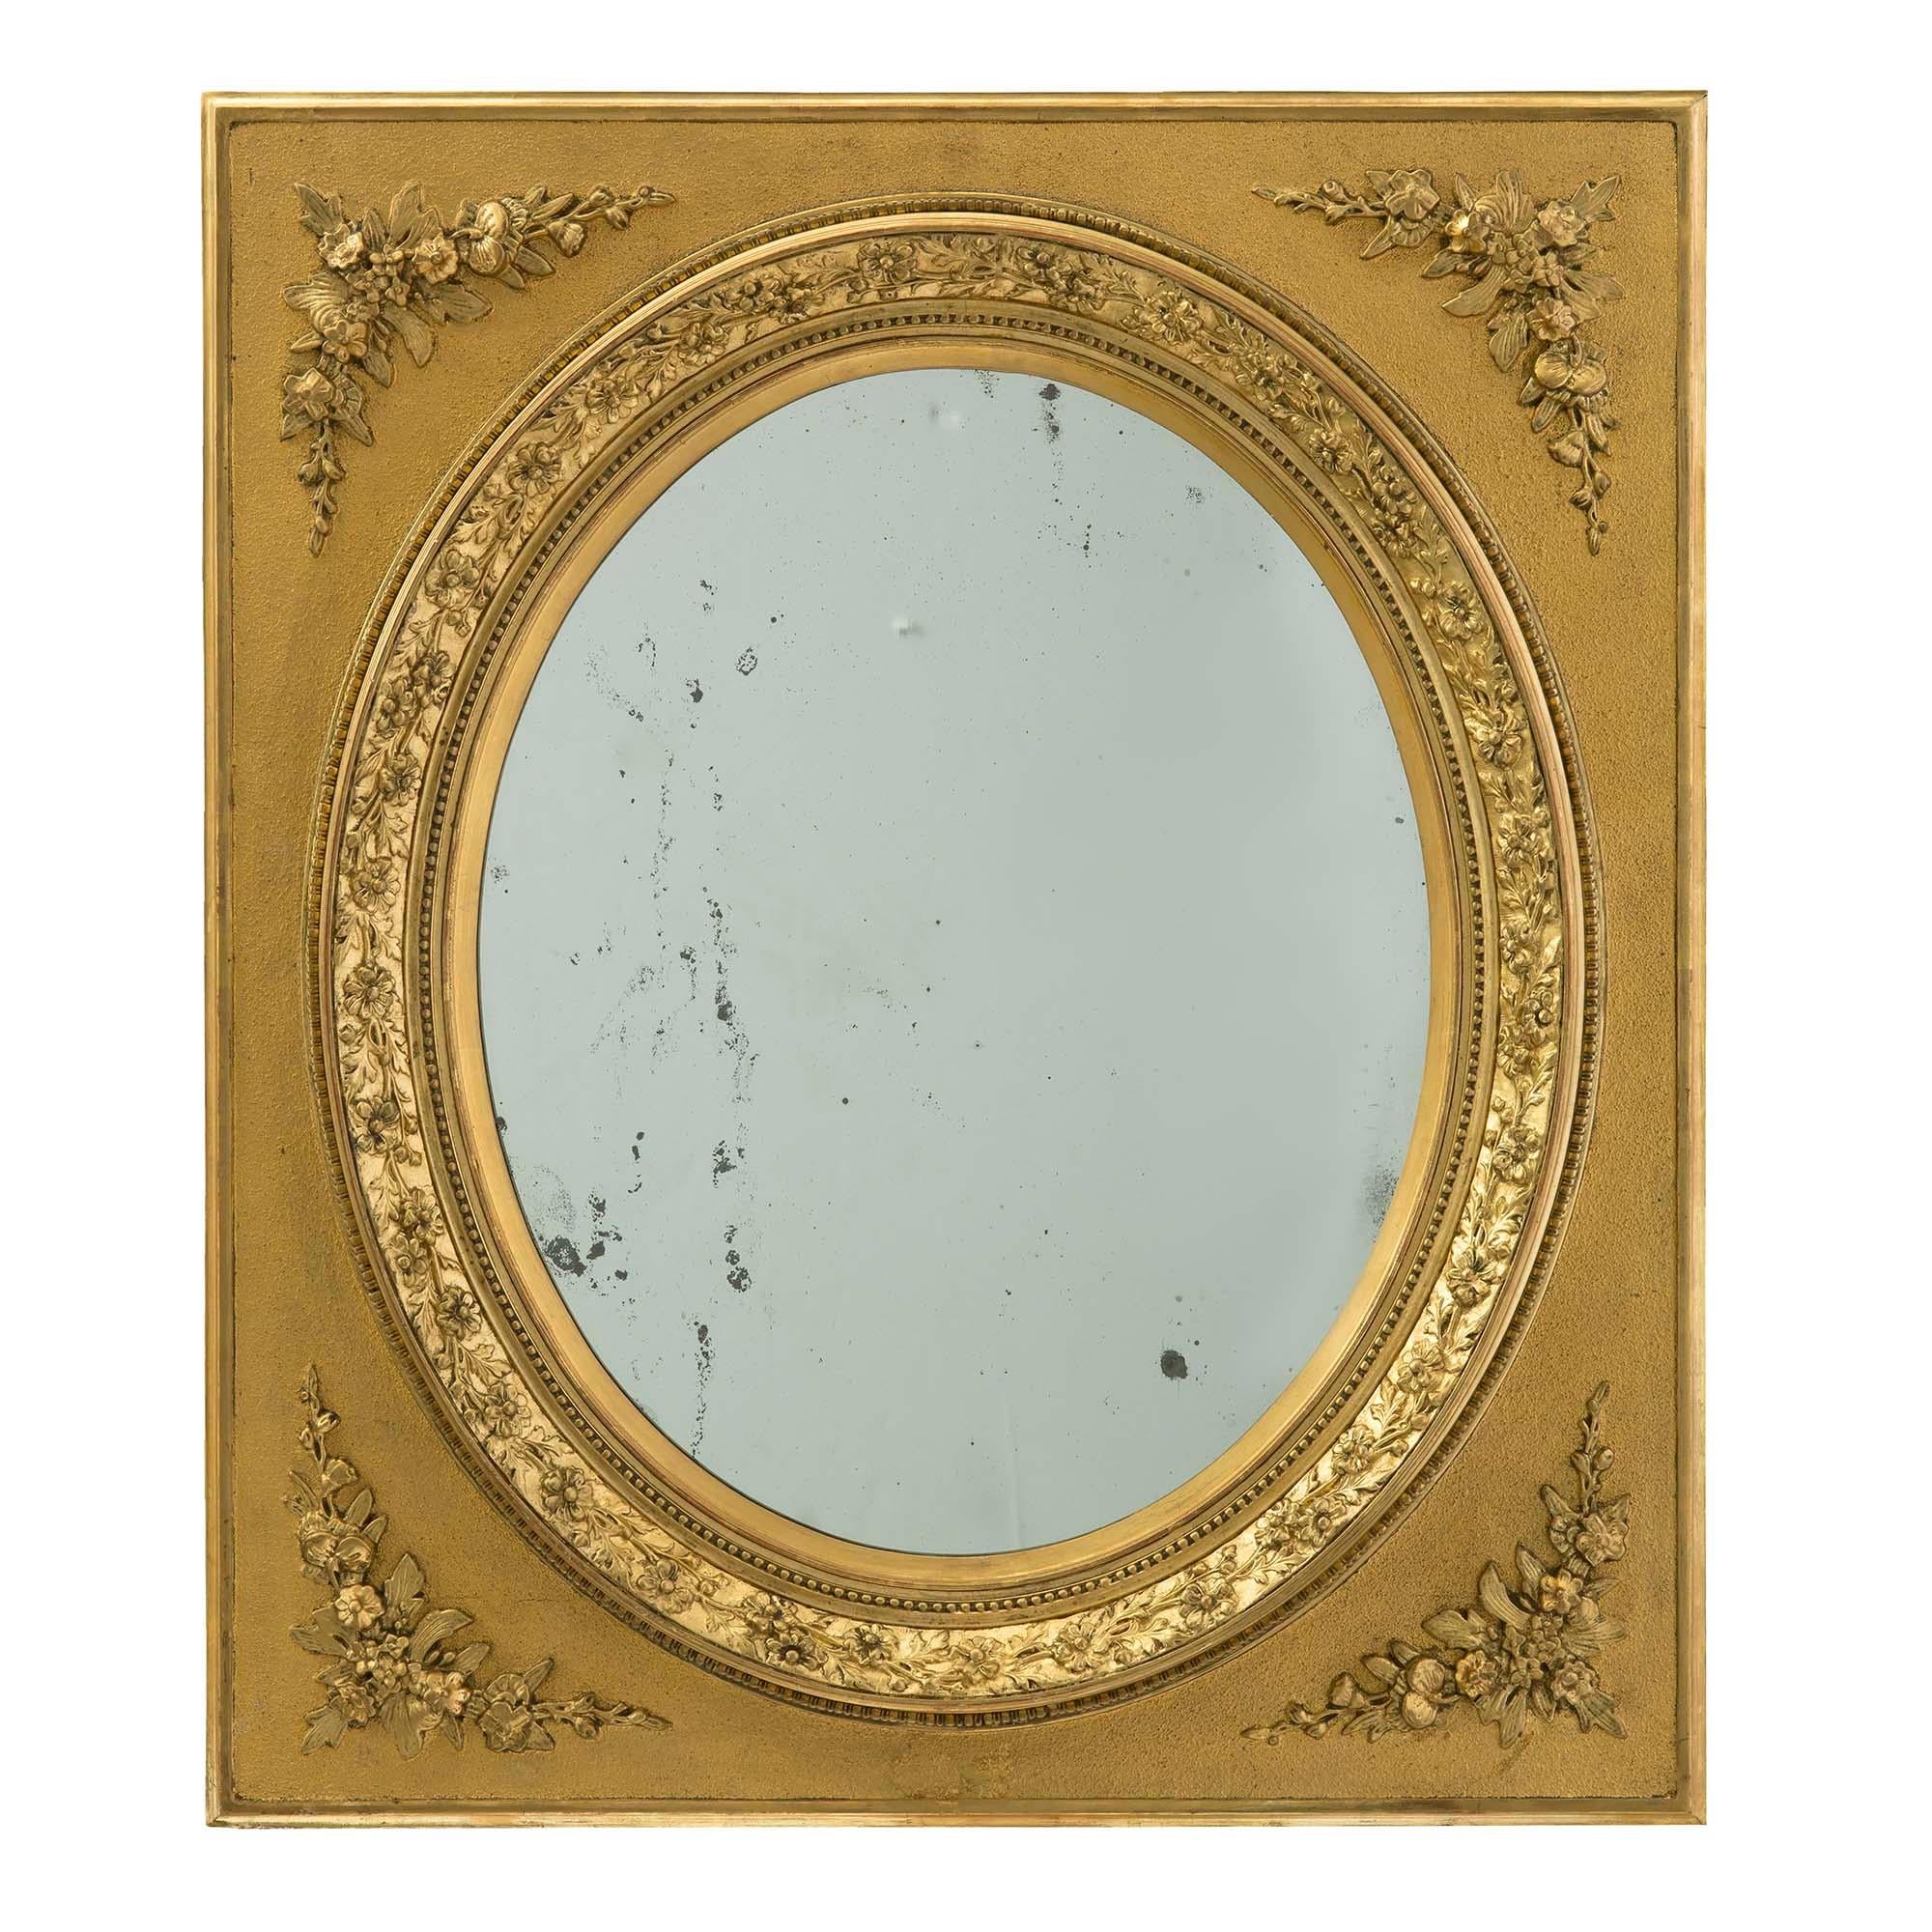 Paire de miroirs français du XIXe siècle, de style Louis XVI, en bois doré. Chaque miroir se trouve à l'intérieur d'un cadre carré et d'une découpe ovale avec une garniture de feuillage dans une finition satinée et brunie. À chaque coin se trouvent